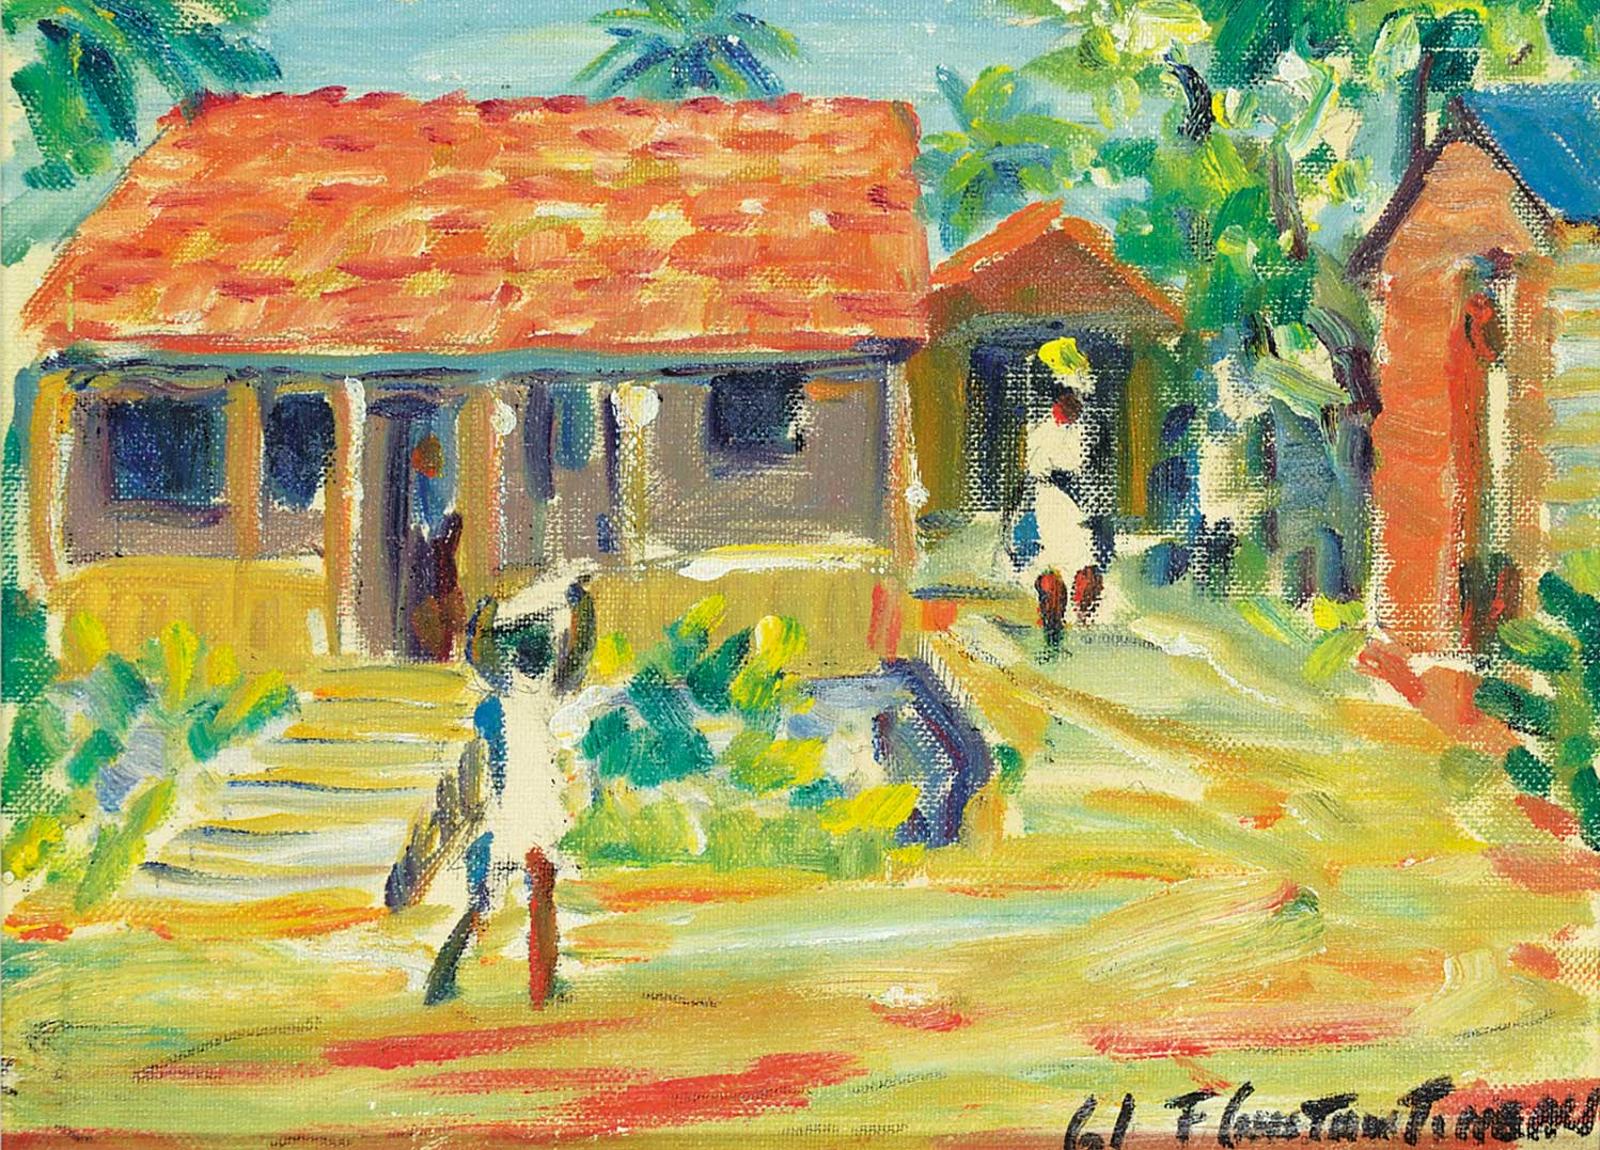 Fleurimond Constantineau (1905-1981) - Trois Ilets, La Martinique